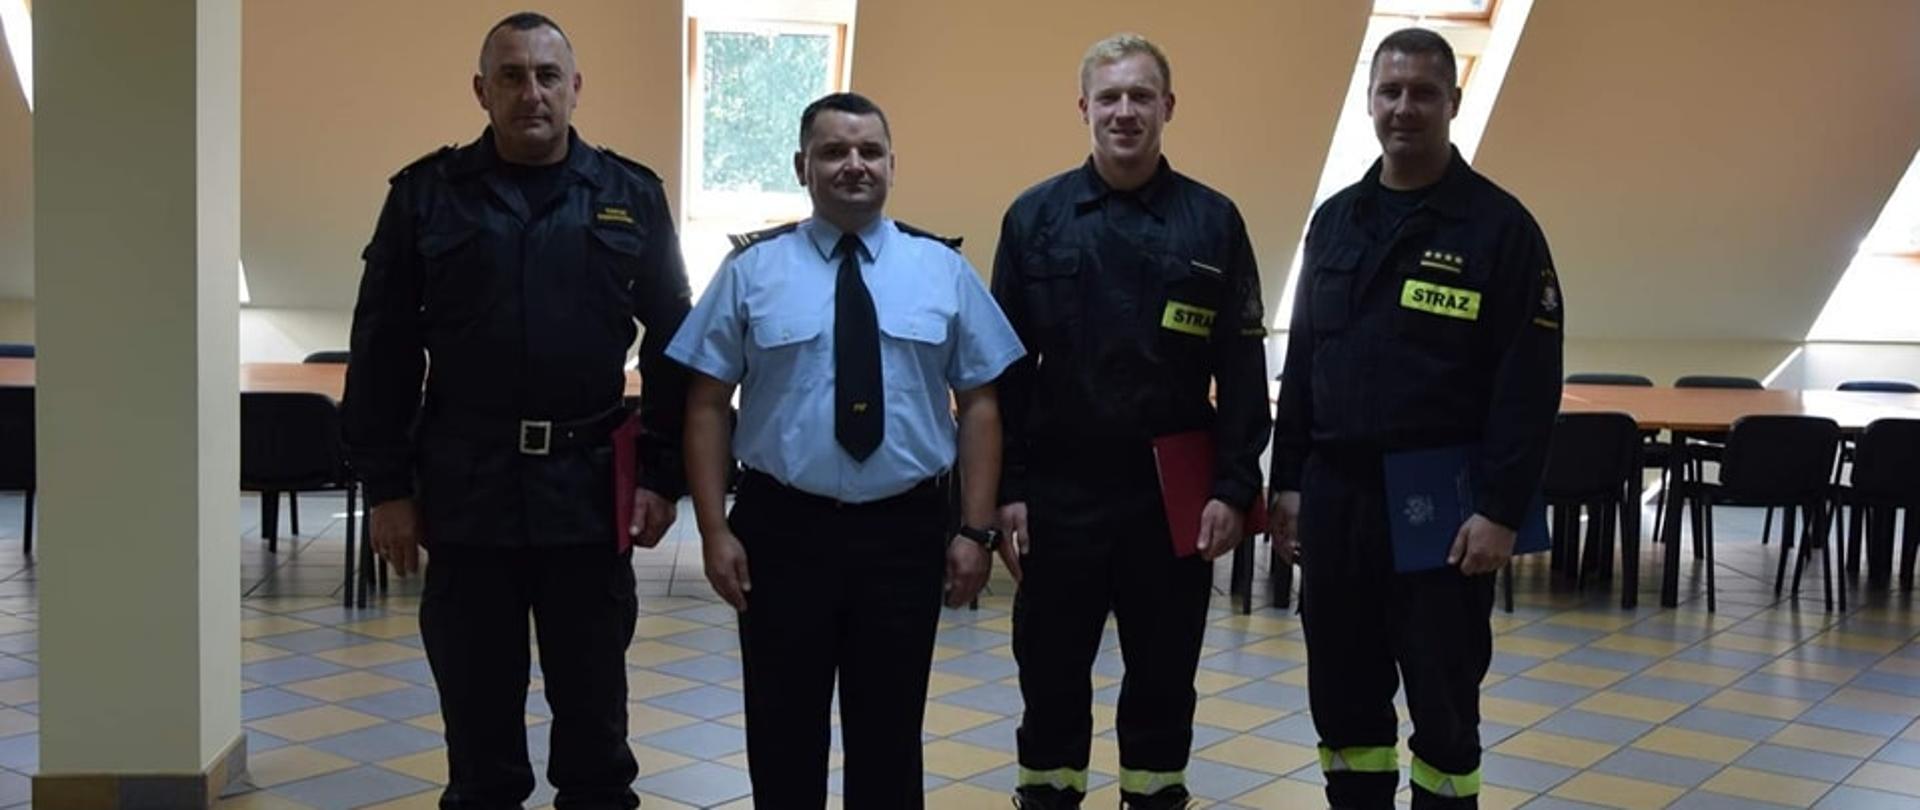 Na zdjęciu widać czterech mężczyzn- strażaków ustawionych w szeregu. W niebieskiej koszuli stoi Komendant Powiatowy młodszy brygadier Witold Juszczak, po jego lewej i prawej stronie stoją strażacy trzymający w dłoniach teczki.